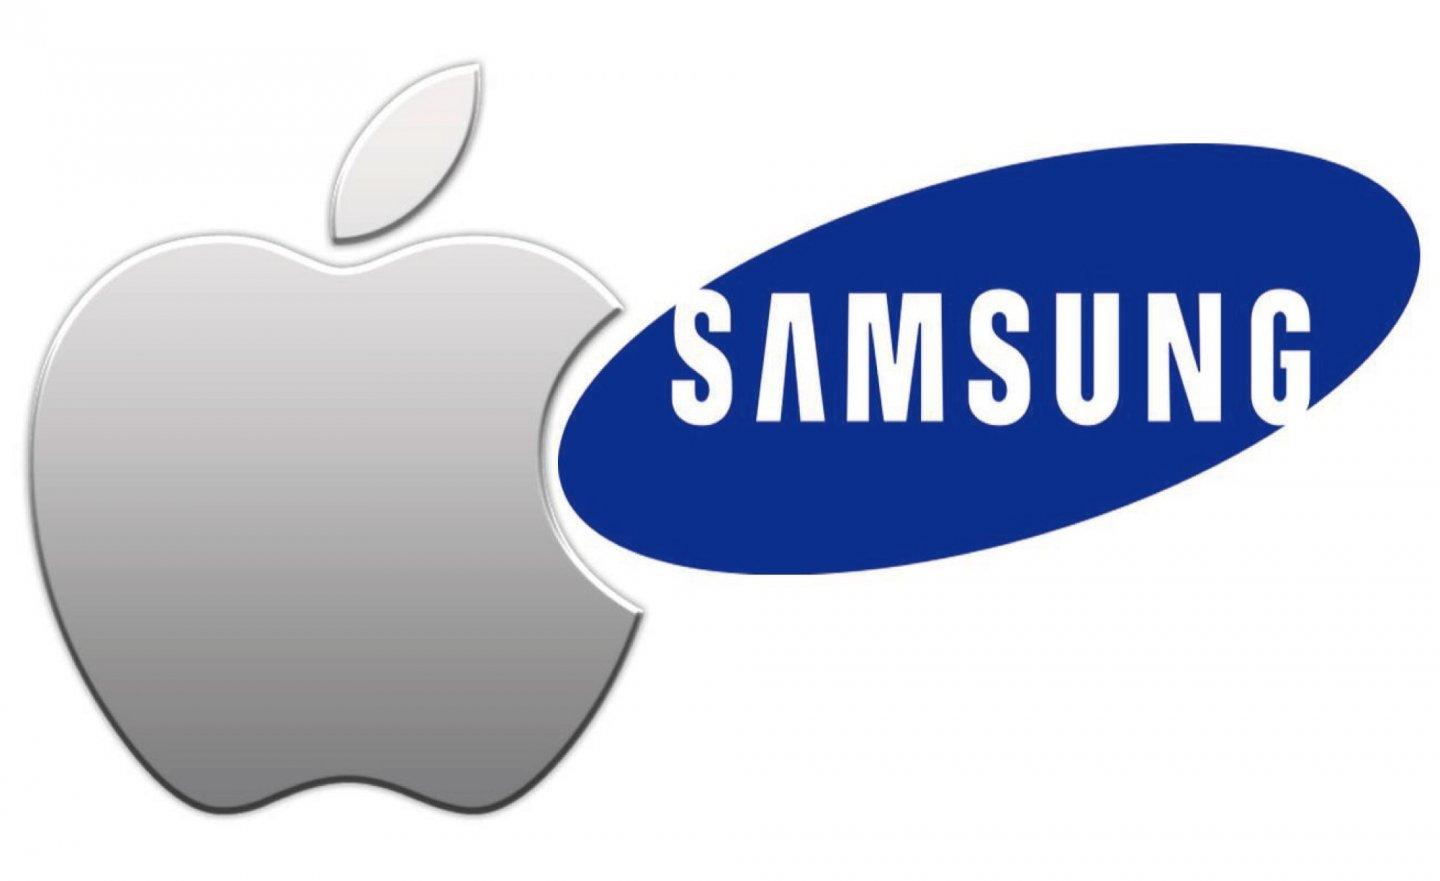 傳出 Apple 蘋果擔心美中貿易禁令，改向 Samsung 三星採購 iPhone 儲存晶片